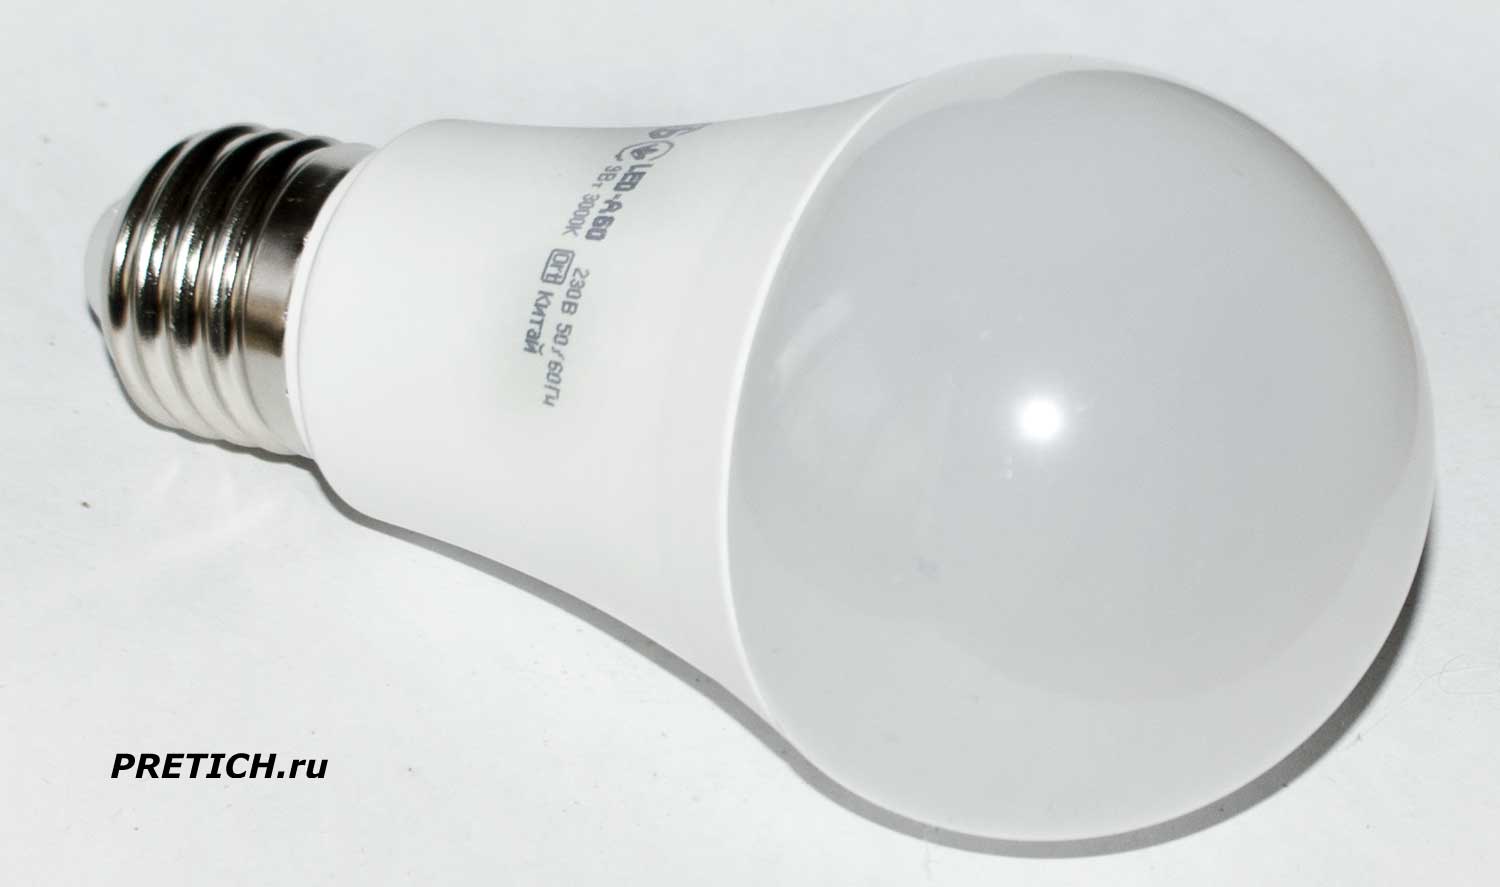 iEK A60 9 Вт E27 долго ли служит эта светодиодная лампочка